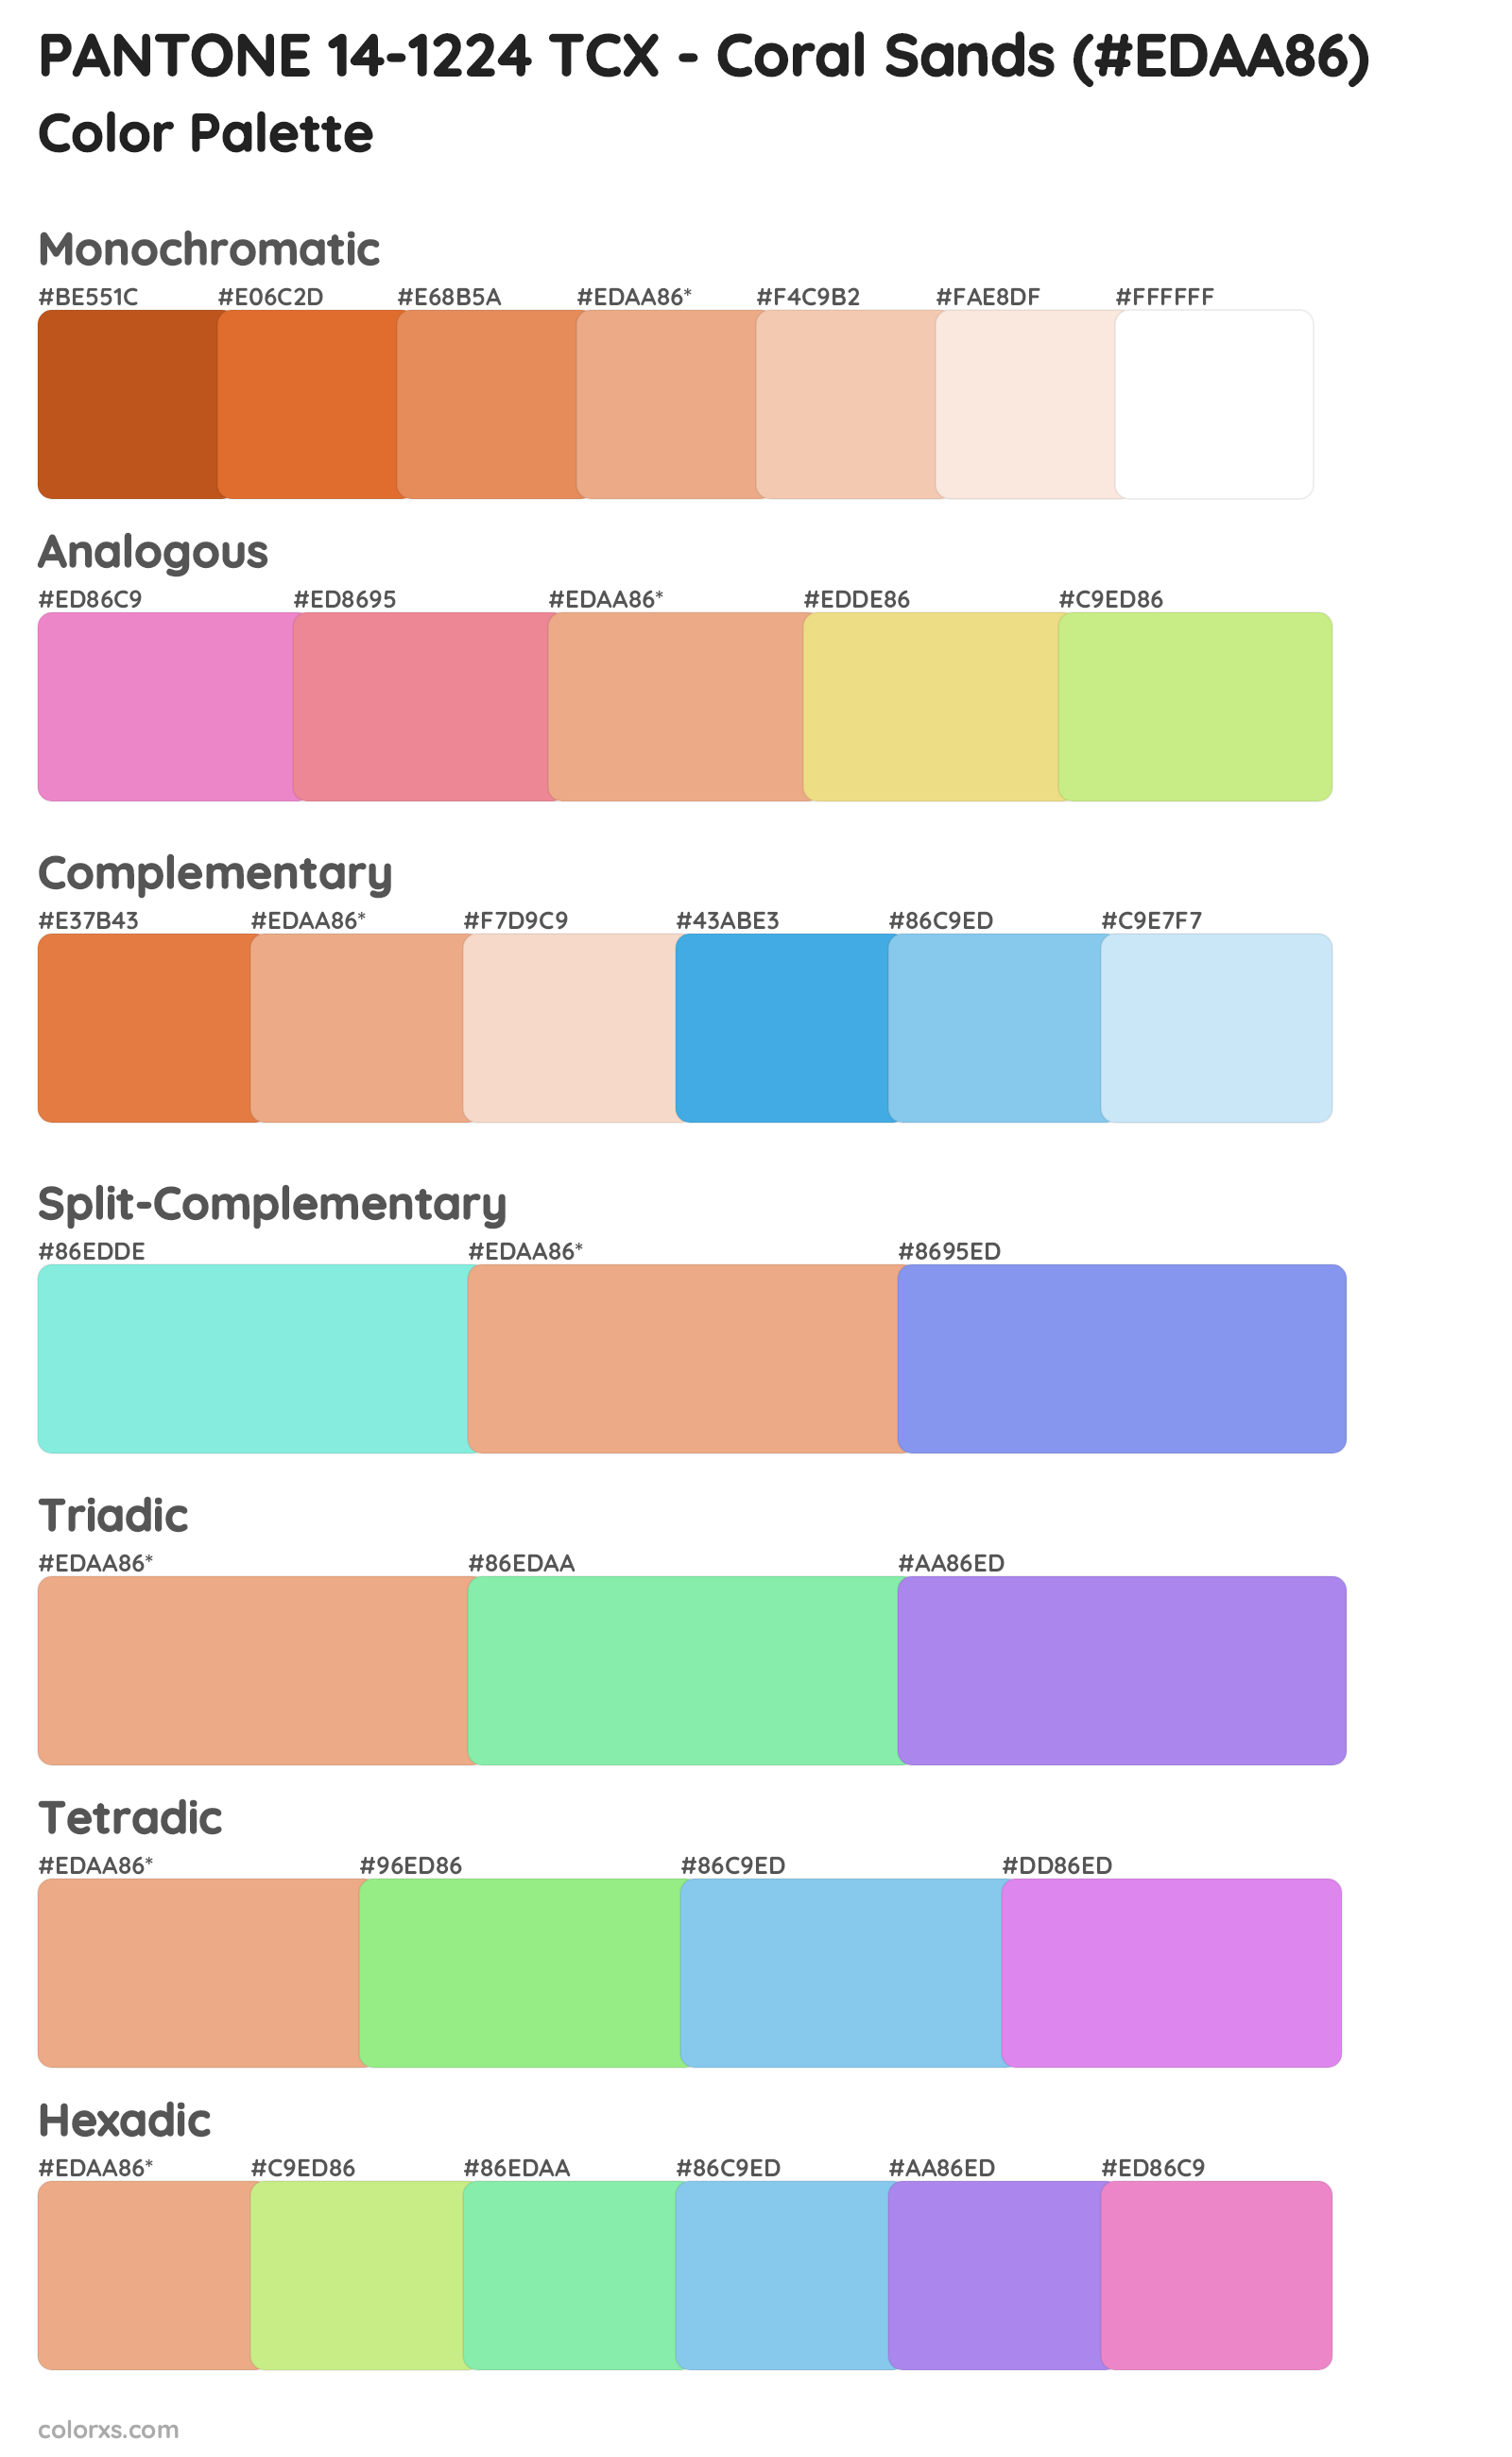 PANTONE 14-1224 TCX - Coral Sands Color Scheme Palettes